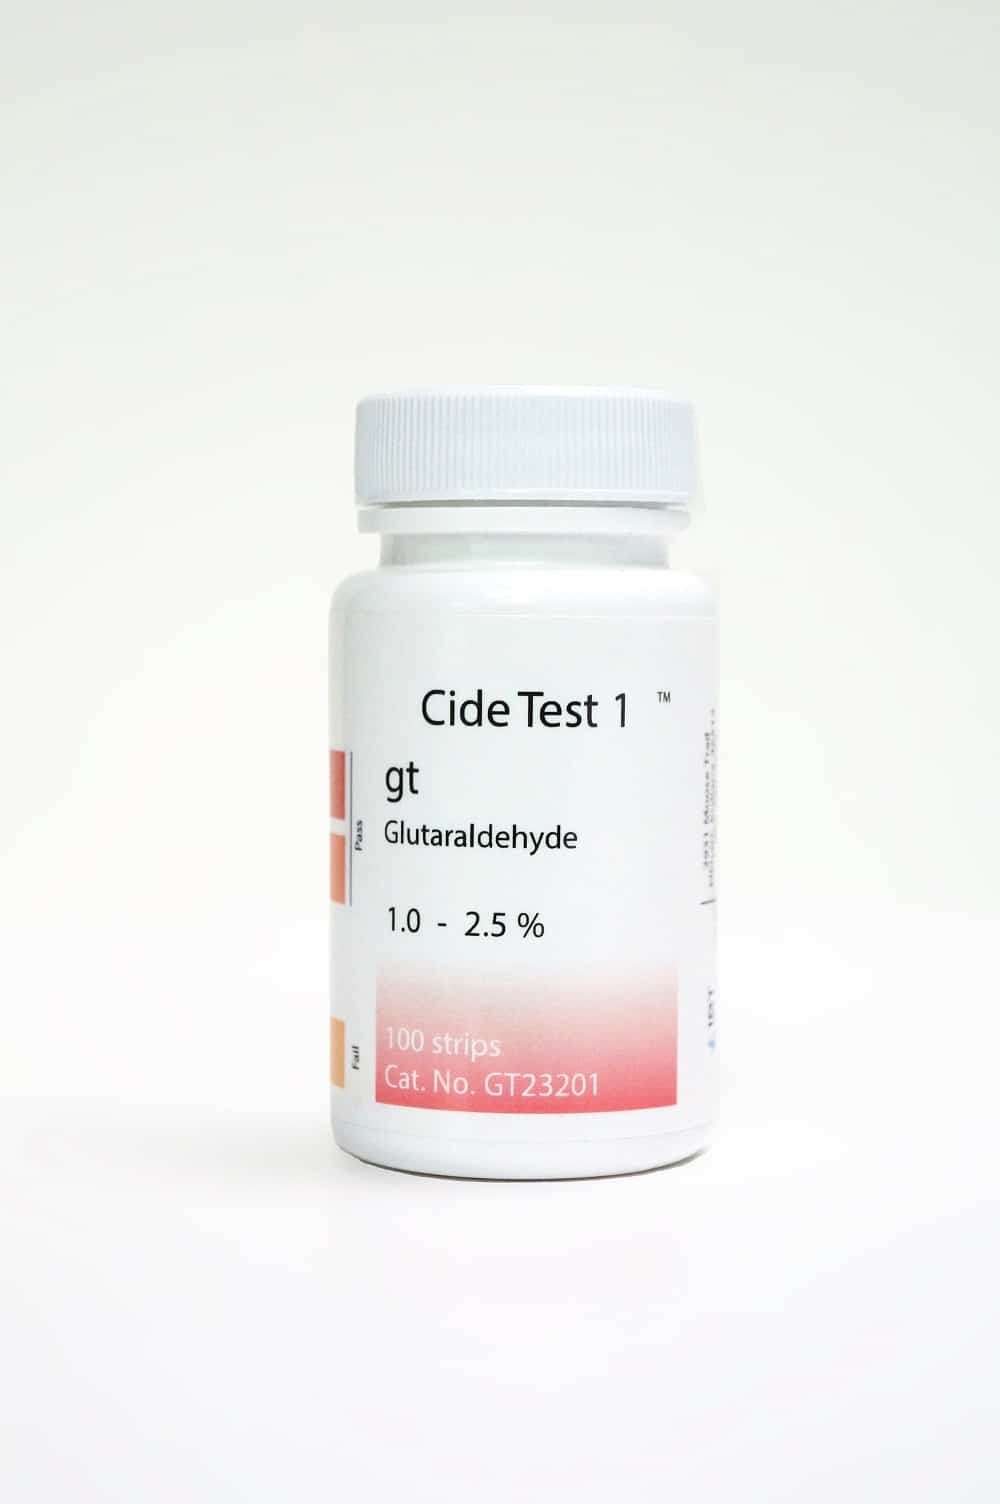 Bandelettes de test de puissance du glutaraldéhyde Cide Test, 100 ct